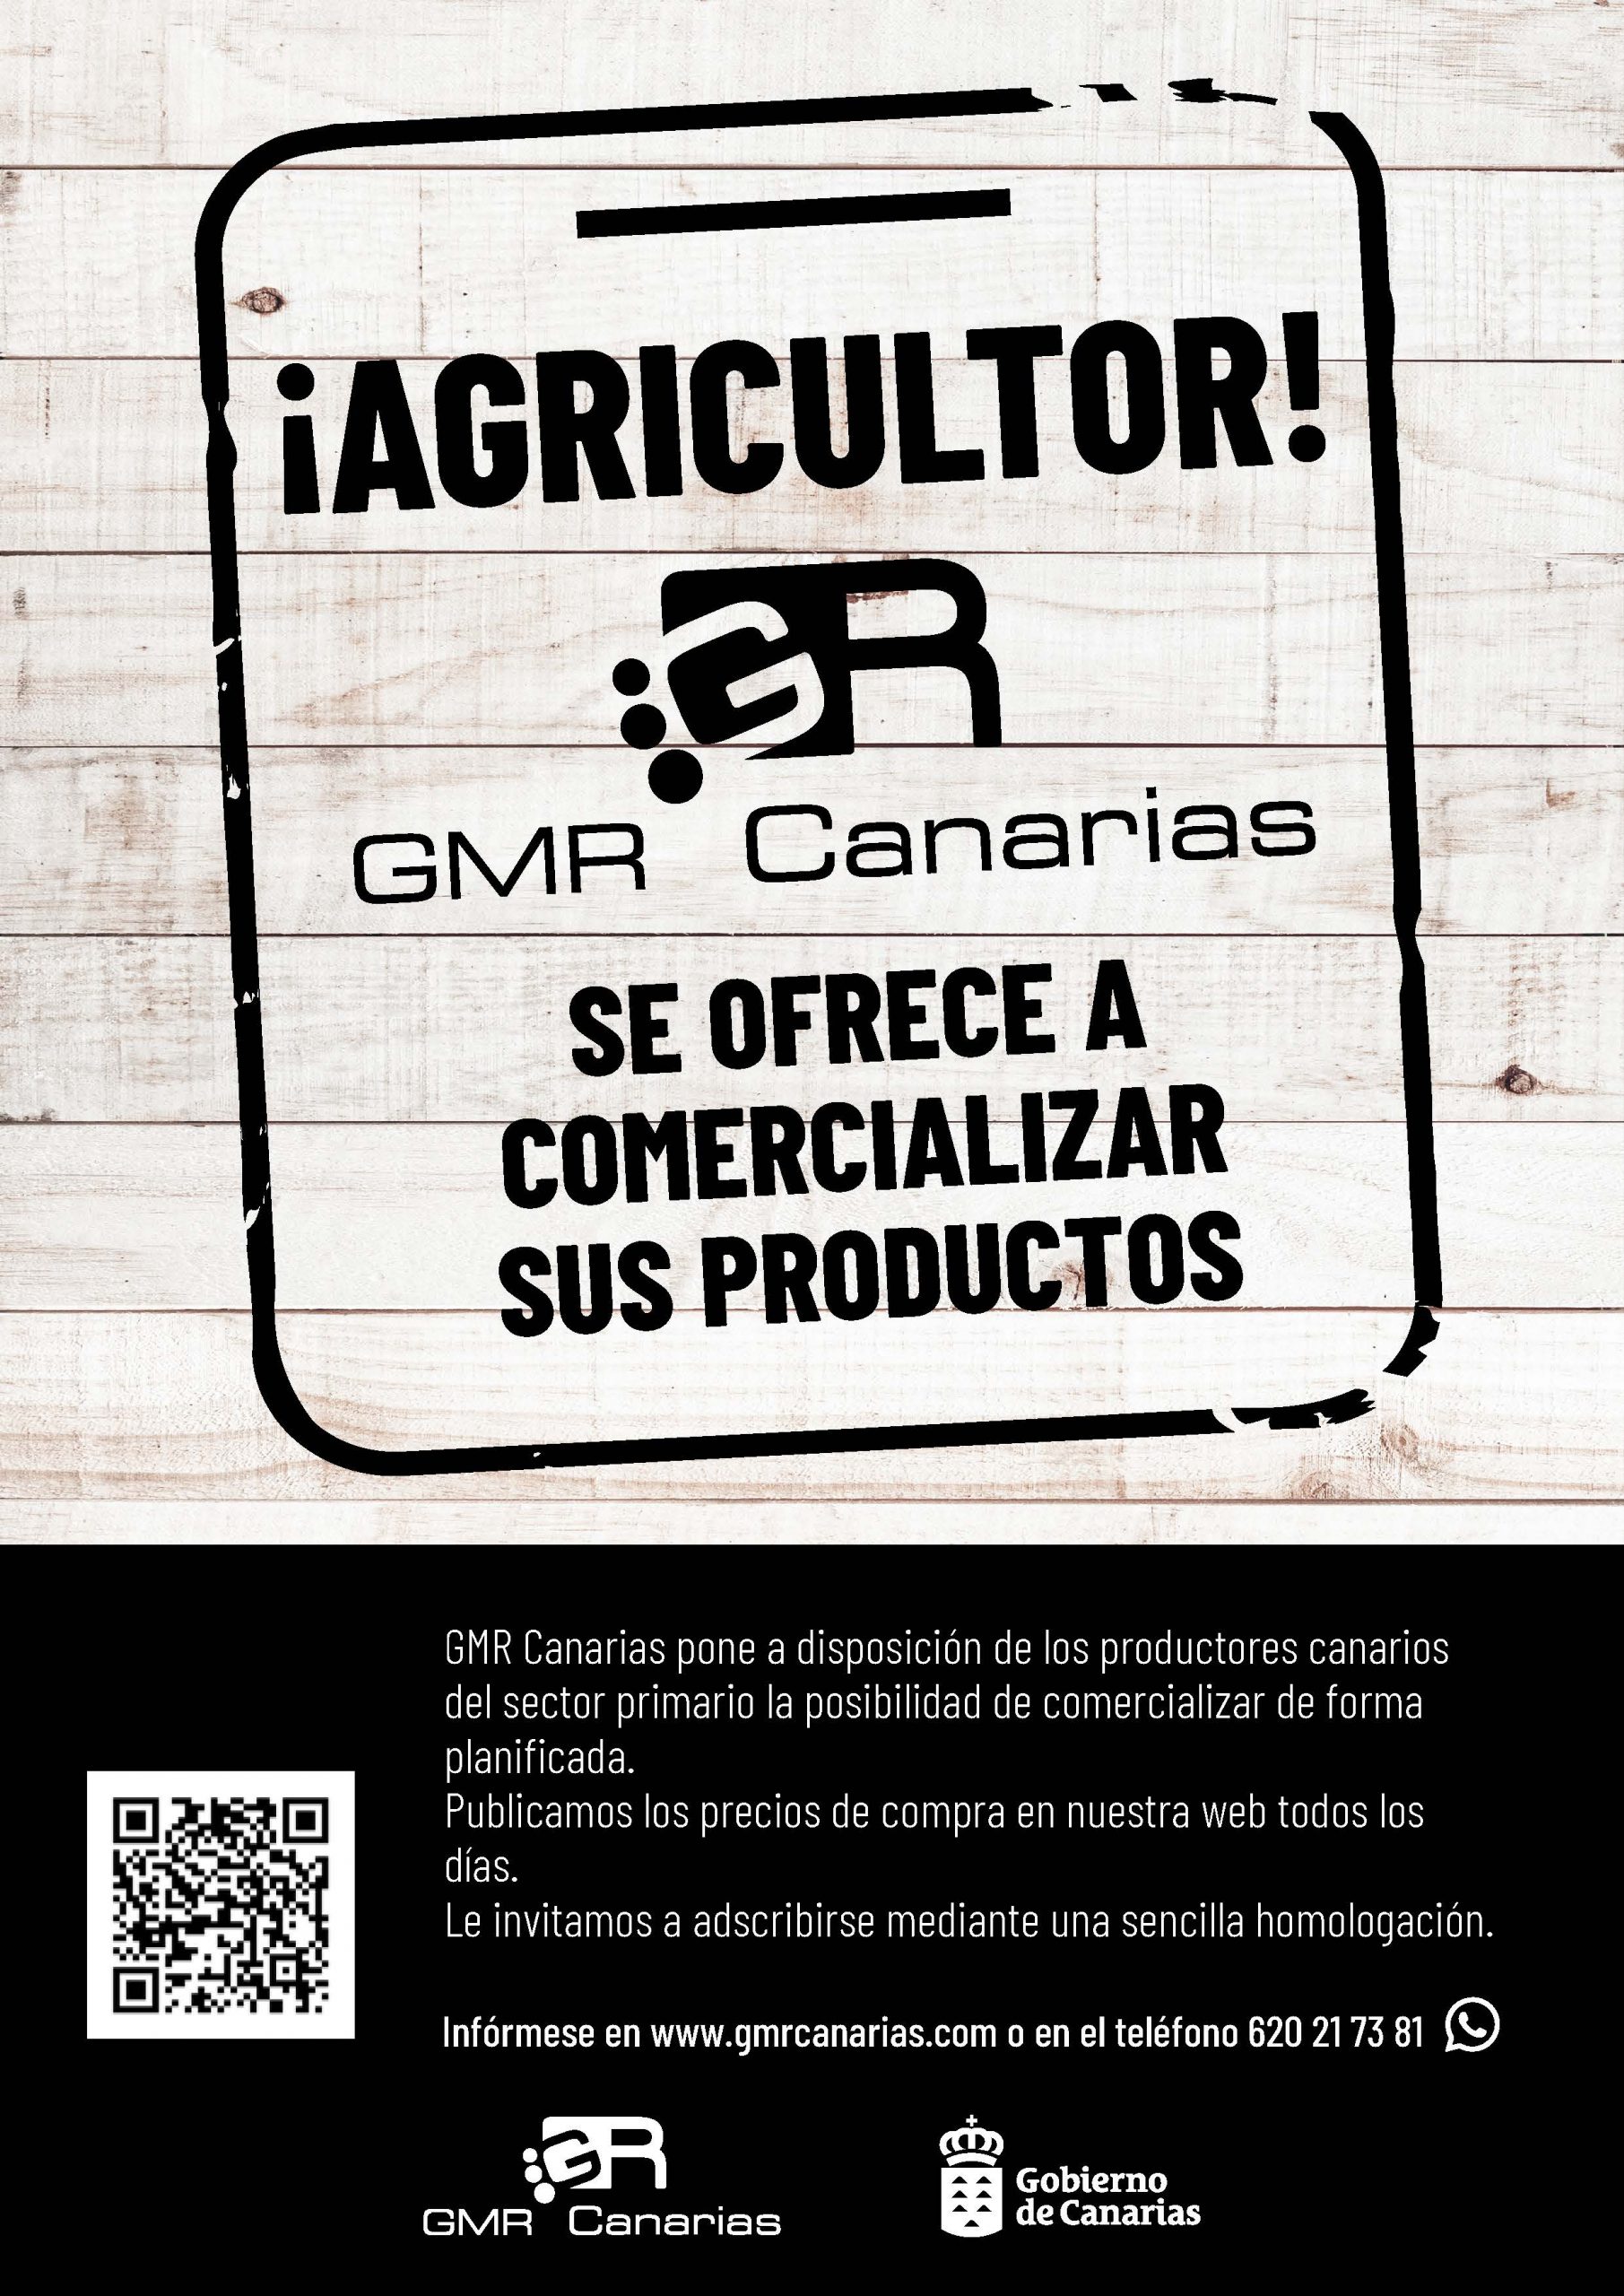 GMR Canarias ofrece a los productores insulares la posibilidad de acceder a los mercados y mejorar su comercialización